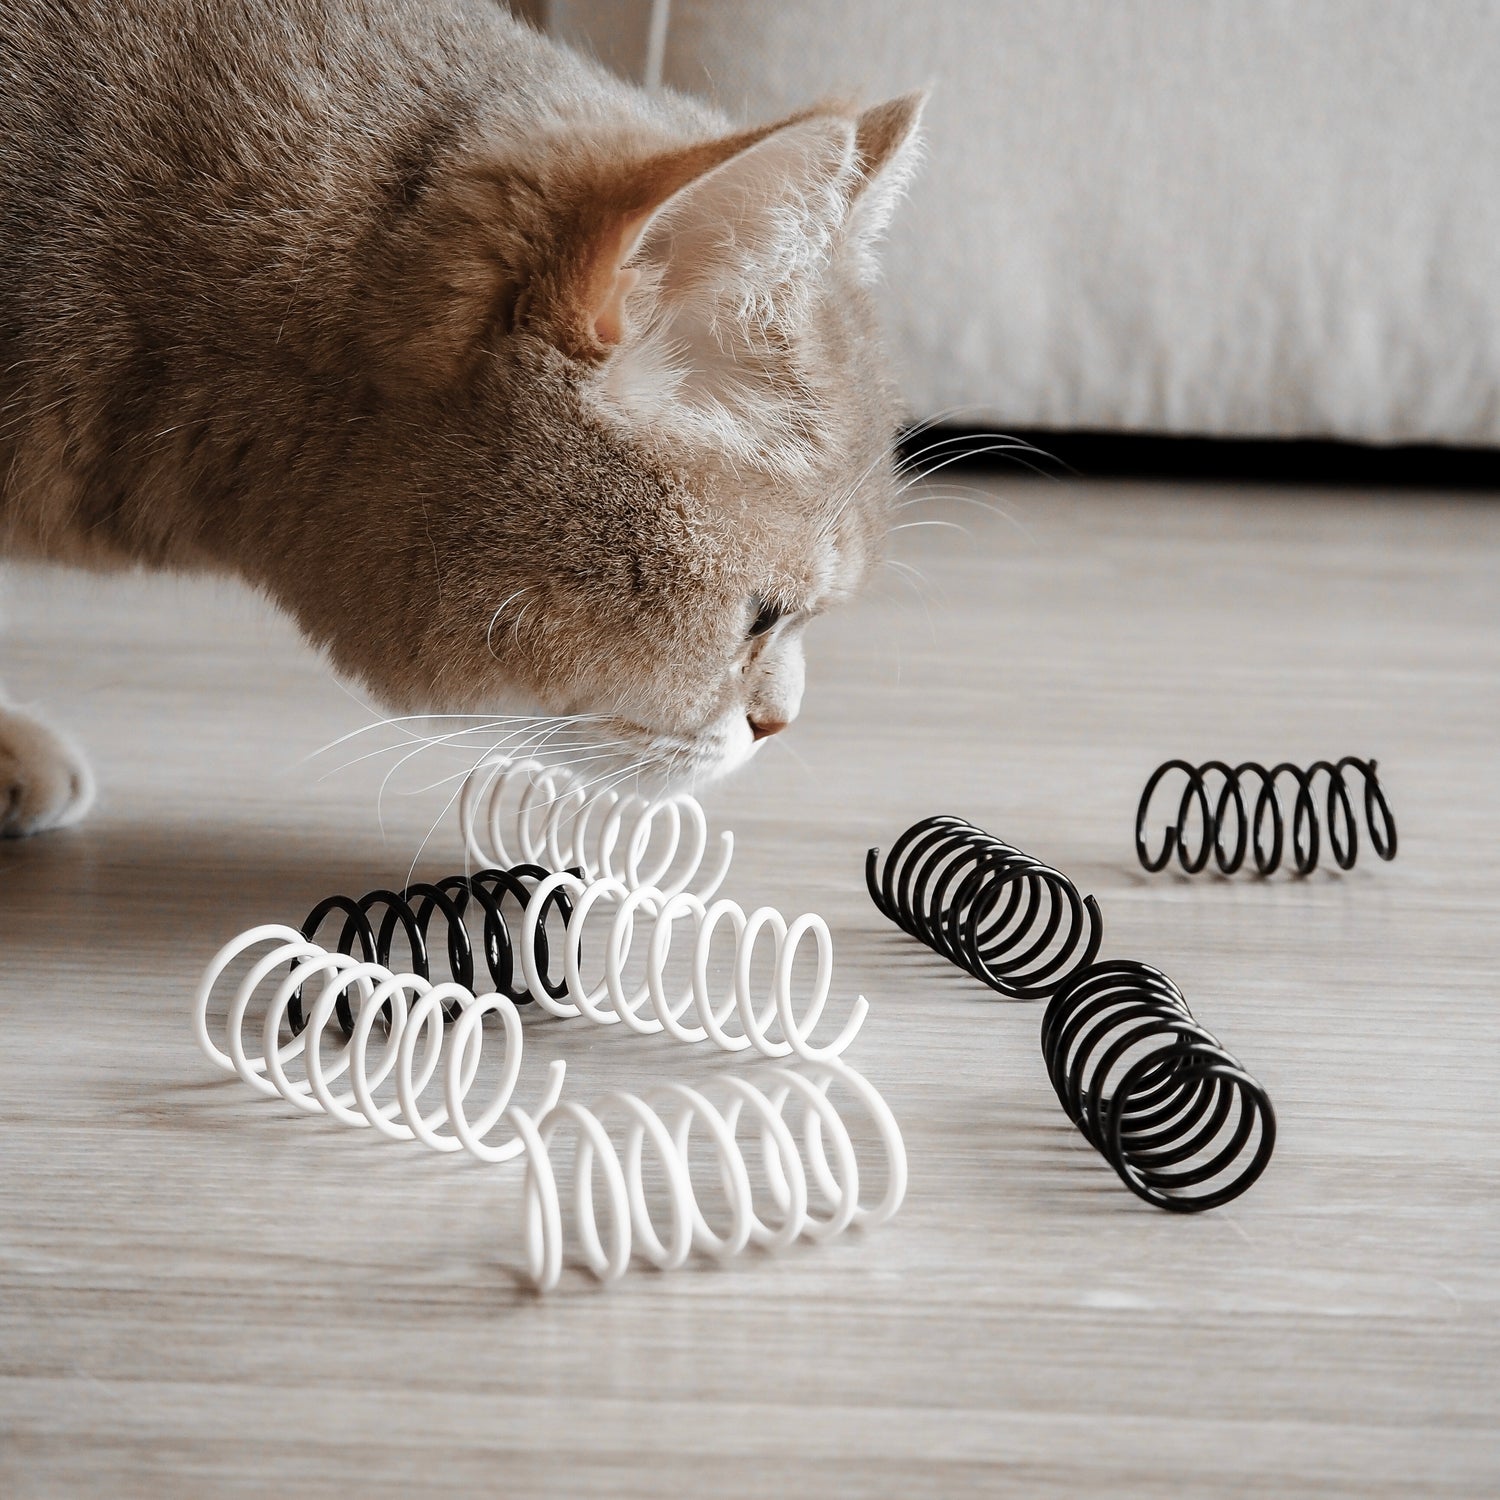 Katze schnuppert an schwarz, weißem Spiralfeder Katzenspielzeug.